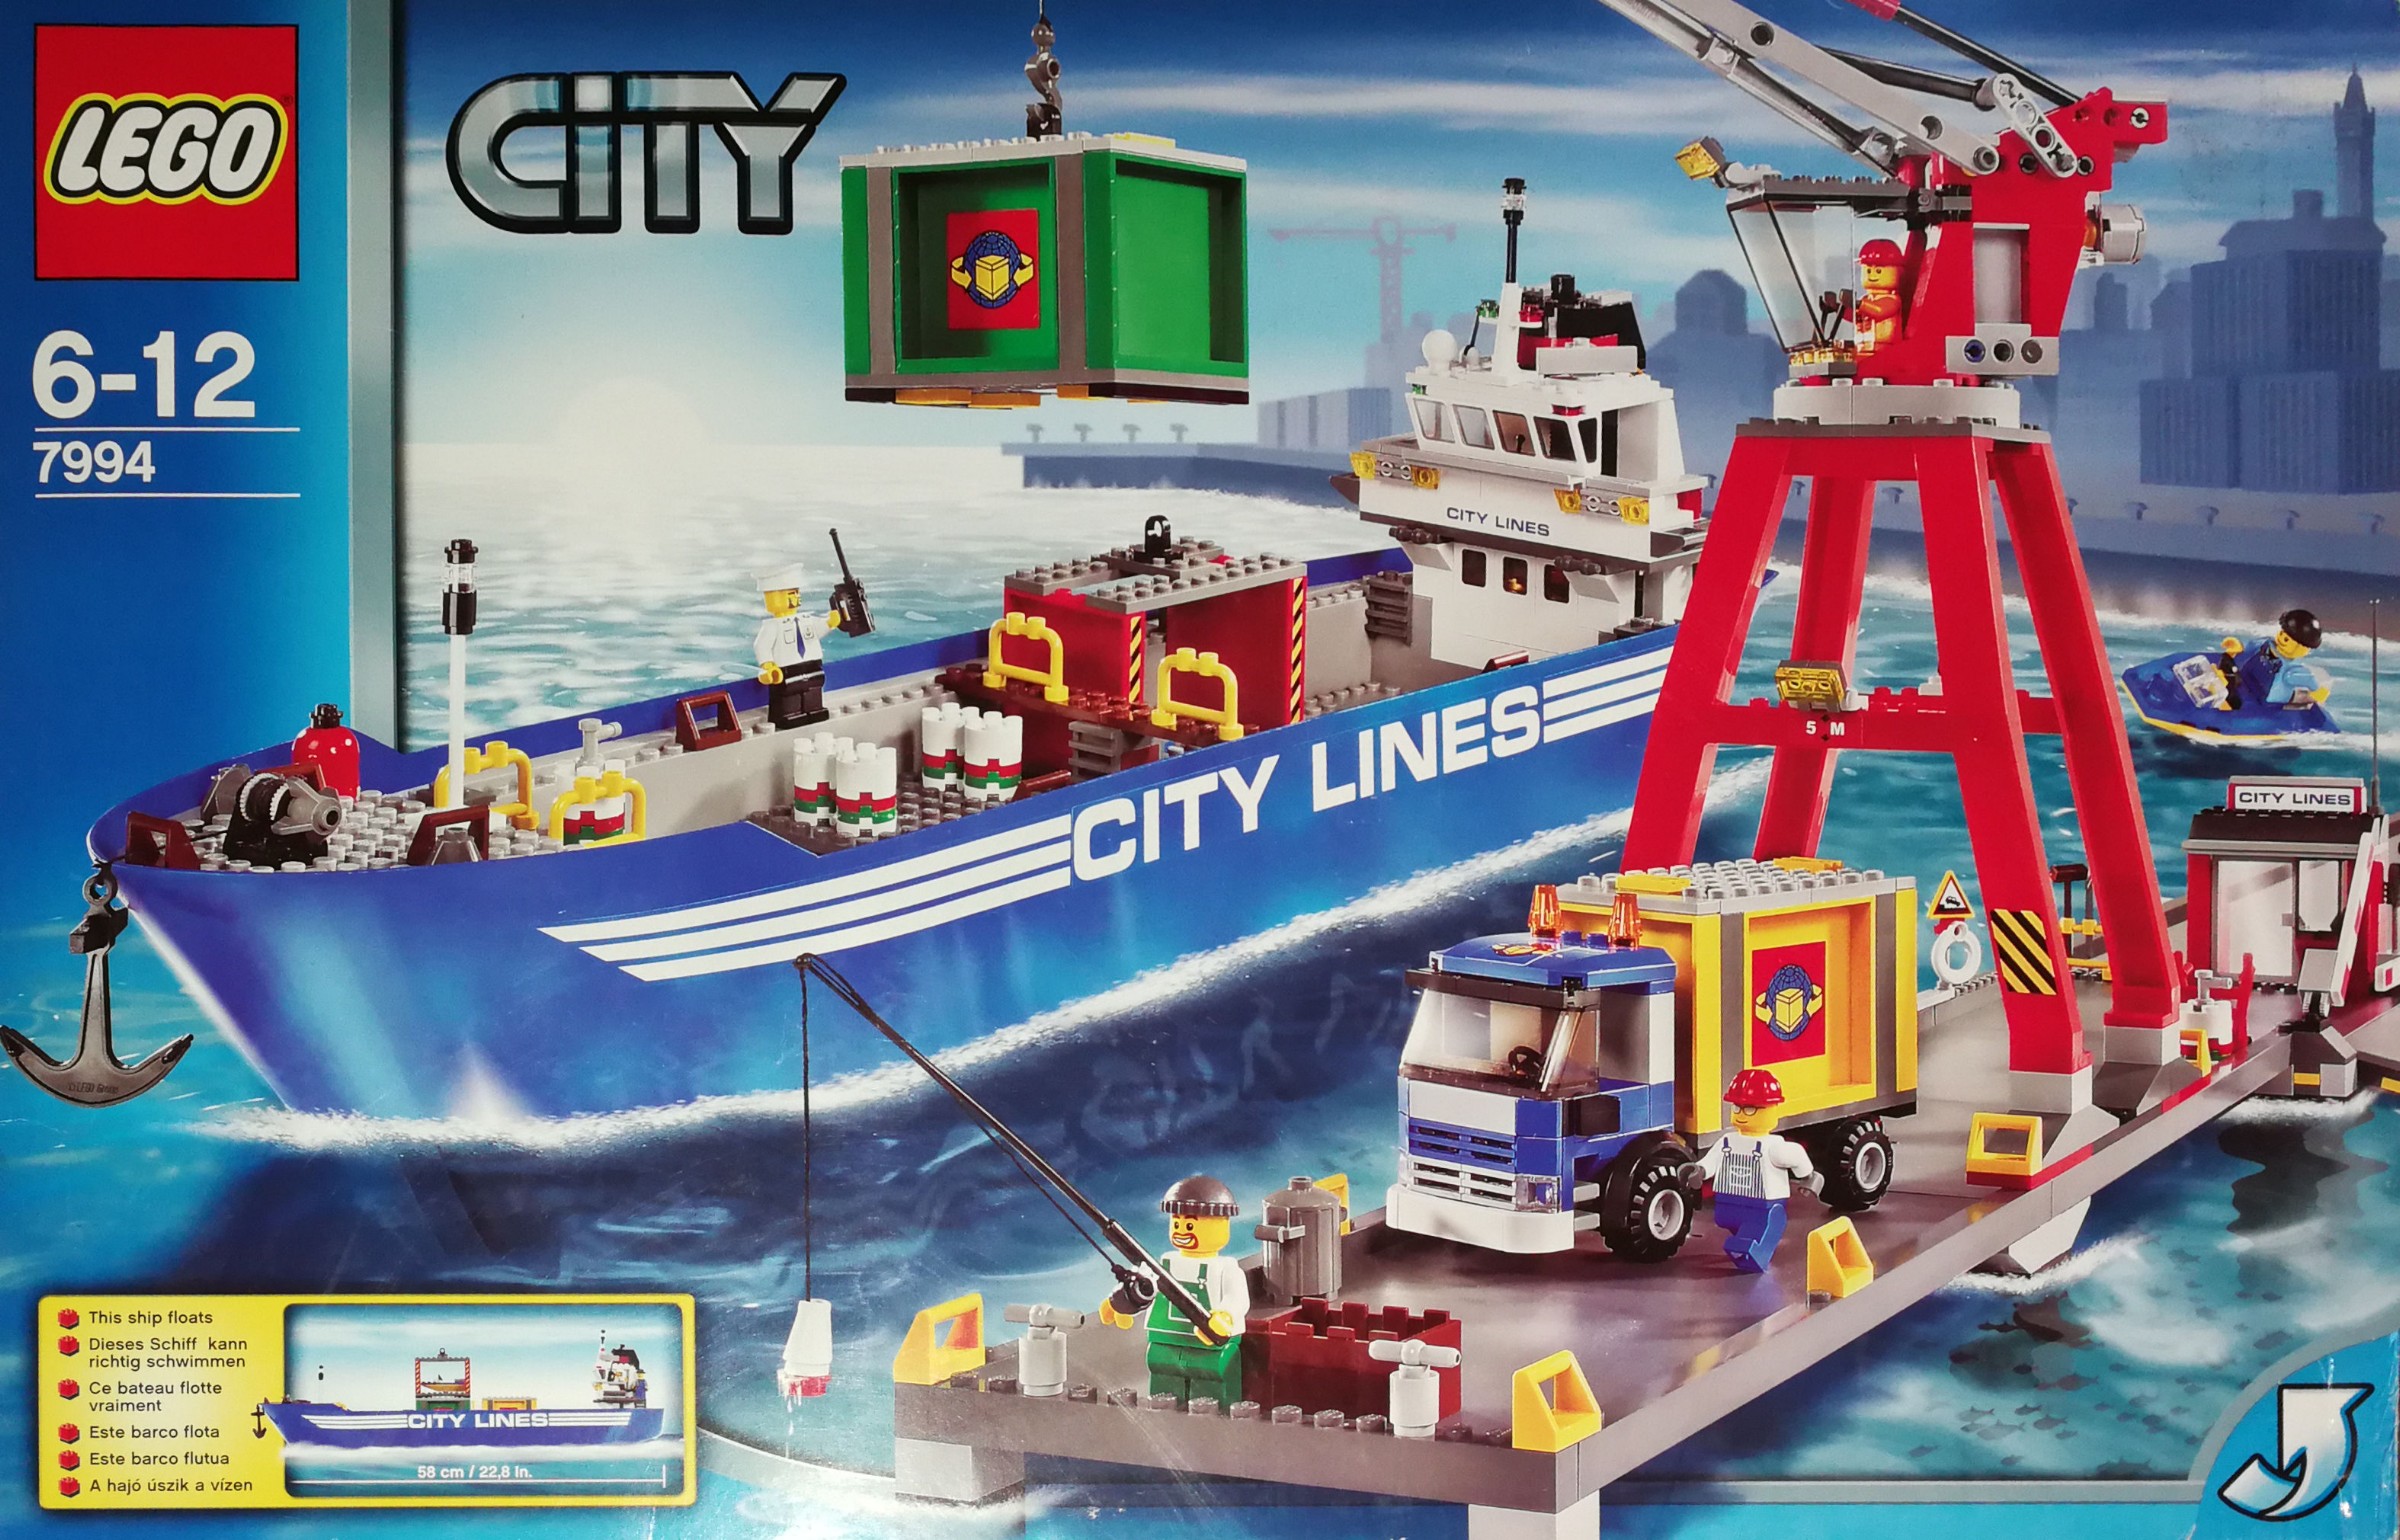 Random set of the day: LEGO City Brickset: LEGO guide and database